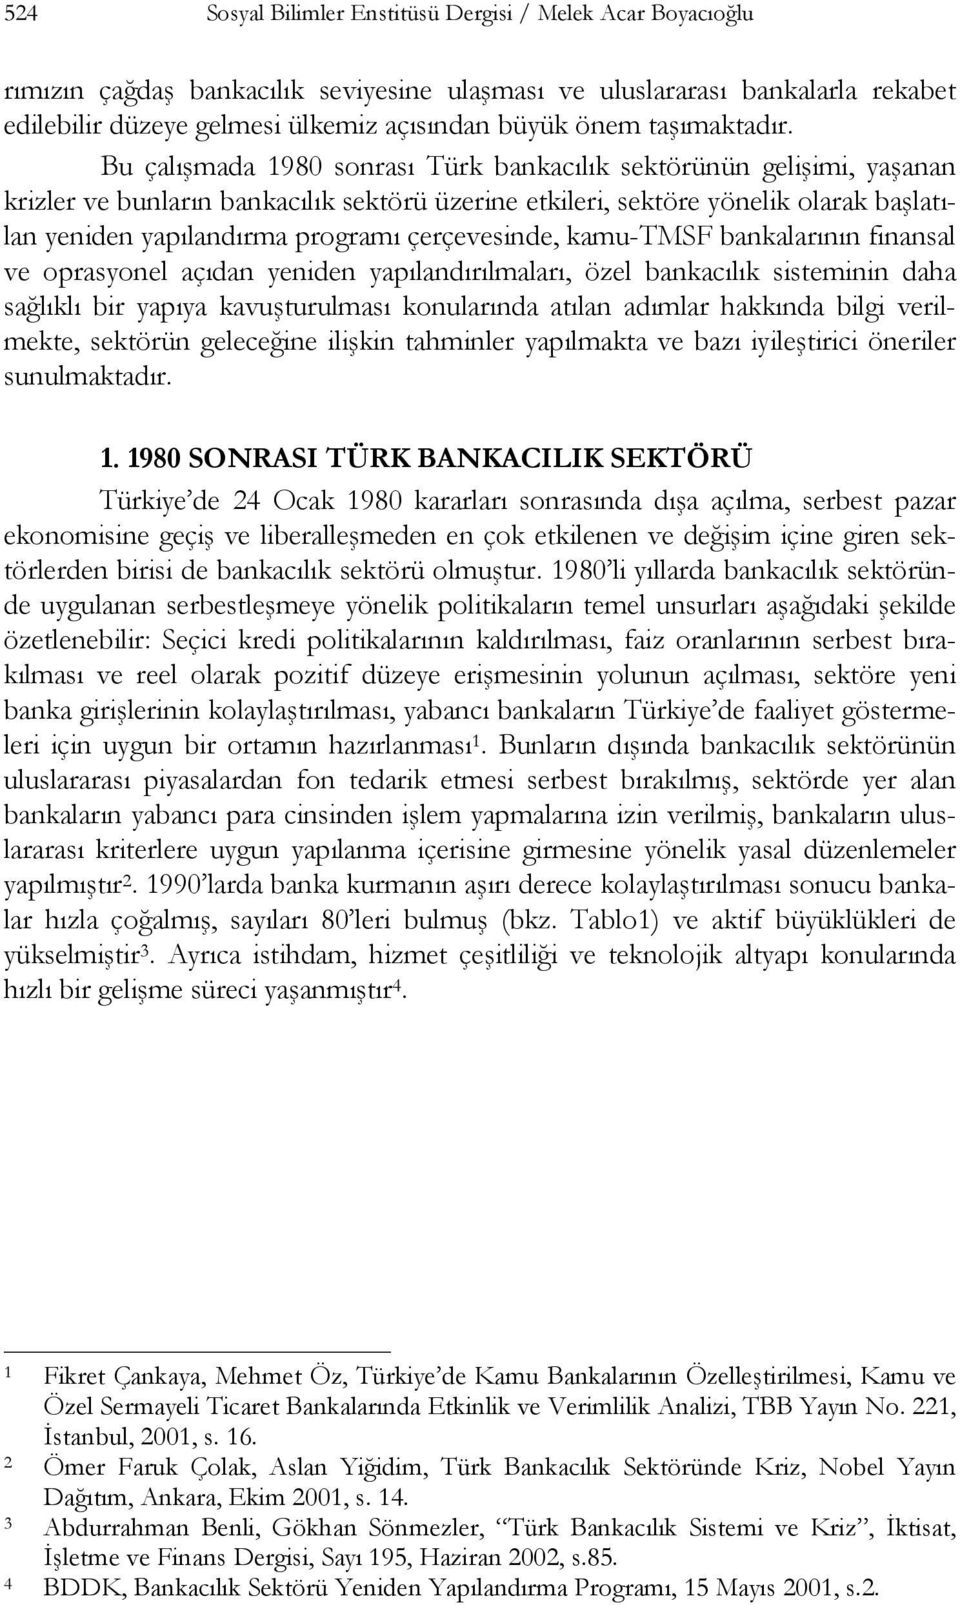 Bu çalışmada 1980 sonrası Türk bankacılık sektörünün gelişimi, yaşanan krizler ve bunların bankacılık sektörü üzerine etkileri, sektöre yönelik olarak başlatılan yeniden yapılandırma programı